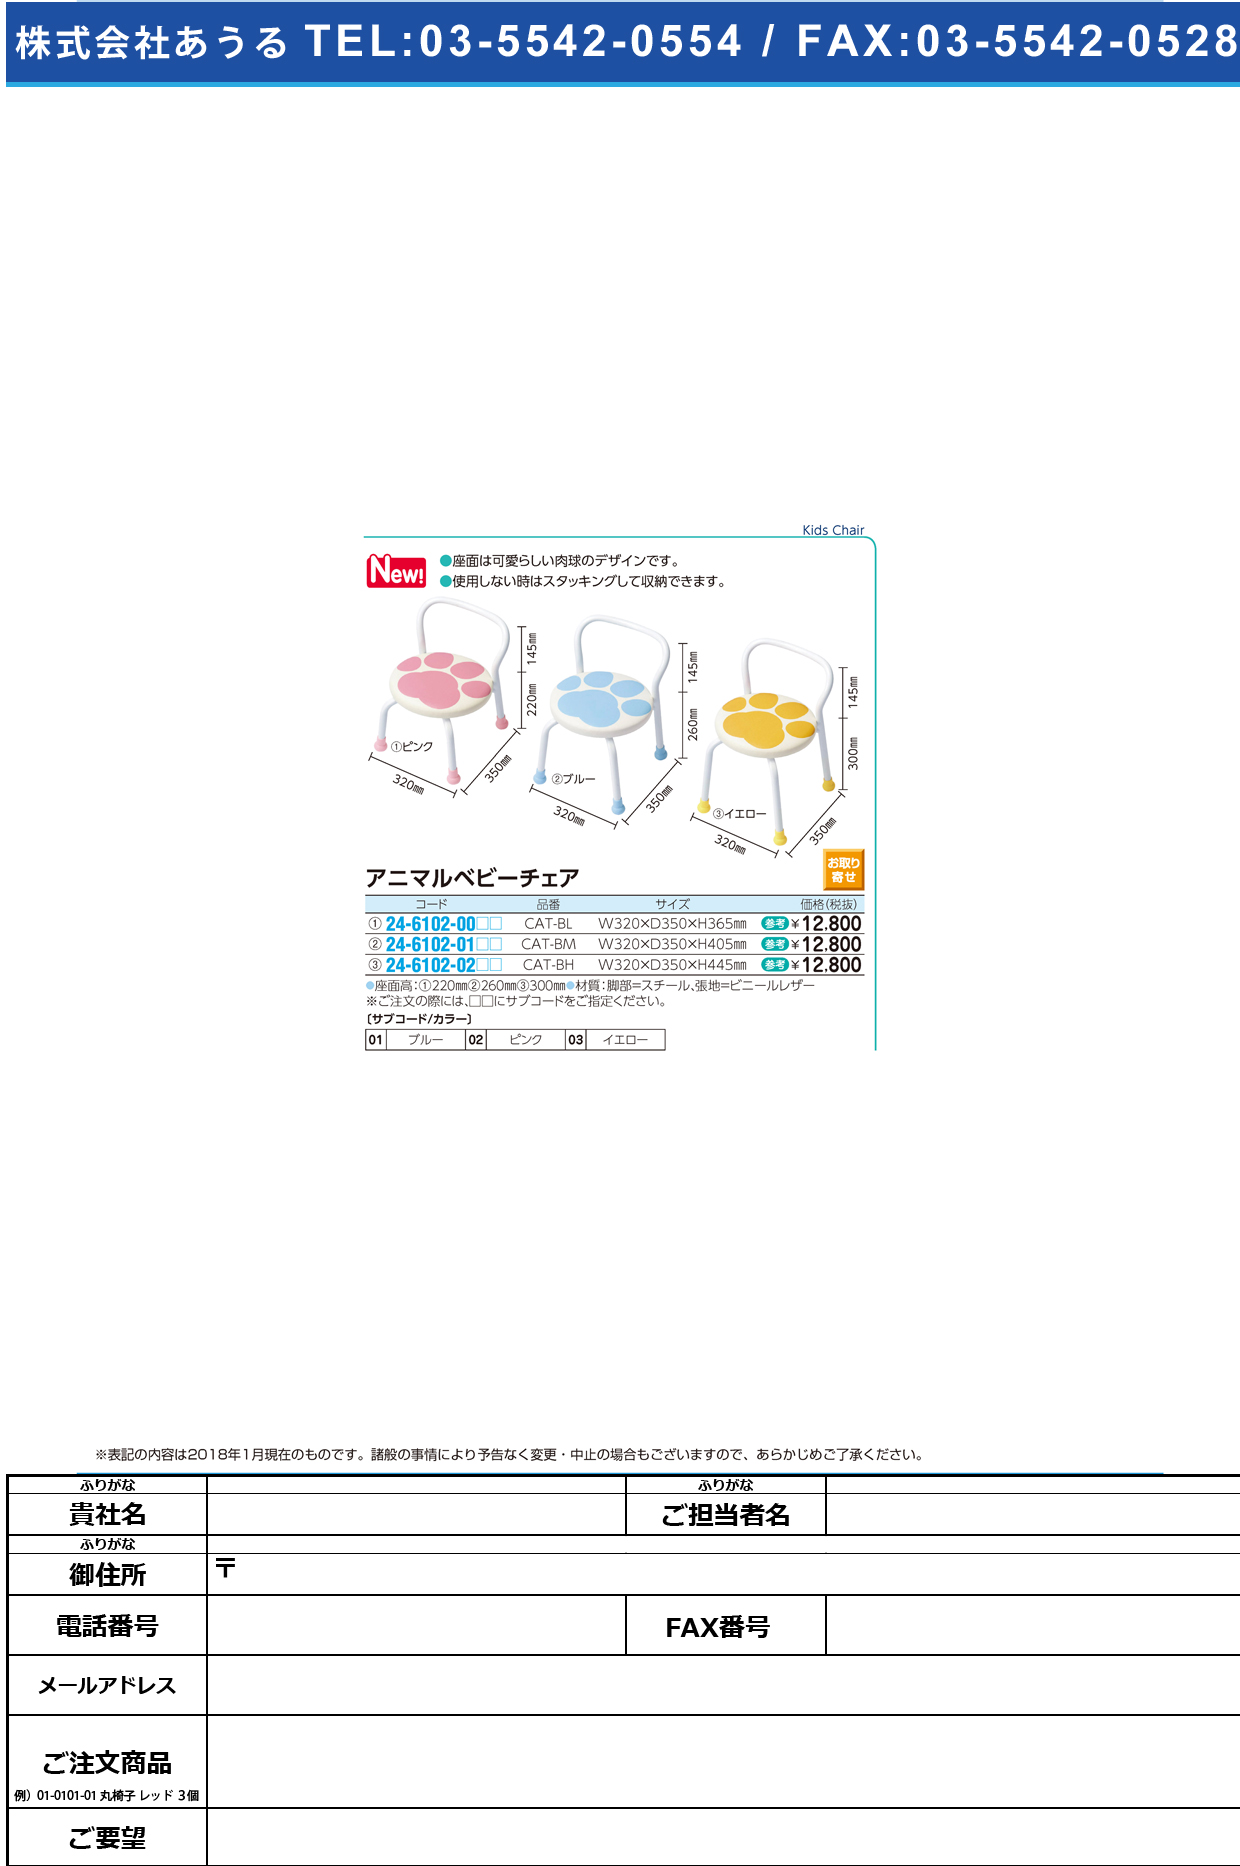 (24-6102-01)アニマルベビーチェア CAT-BM(32X35X40.5CM ｱﾆﾏﾙﾍﾞﾋﾞｰﾁｪｱ ピンク【1台単位】【2019年カタログ商品】